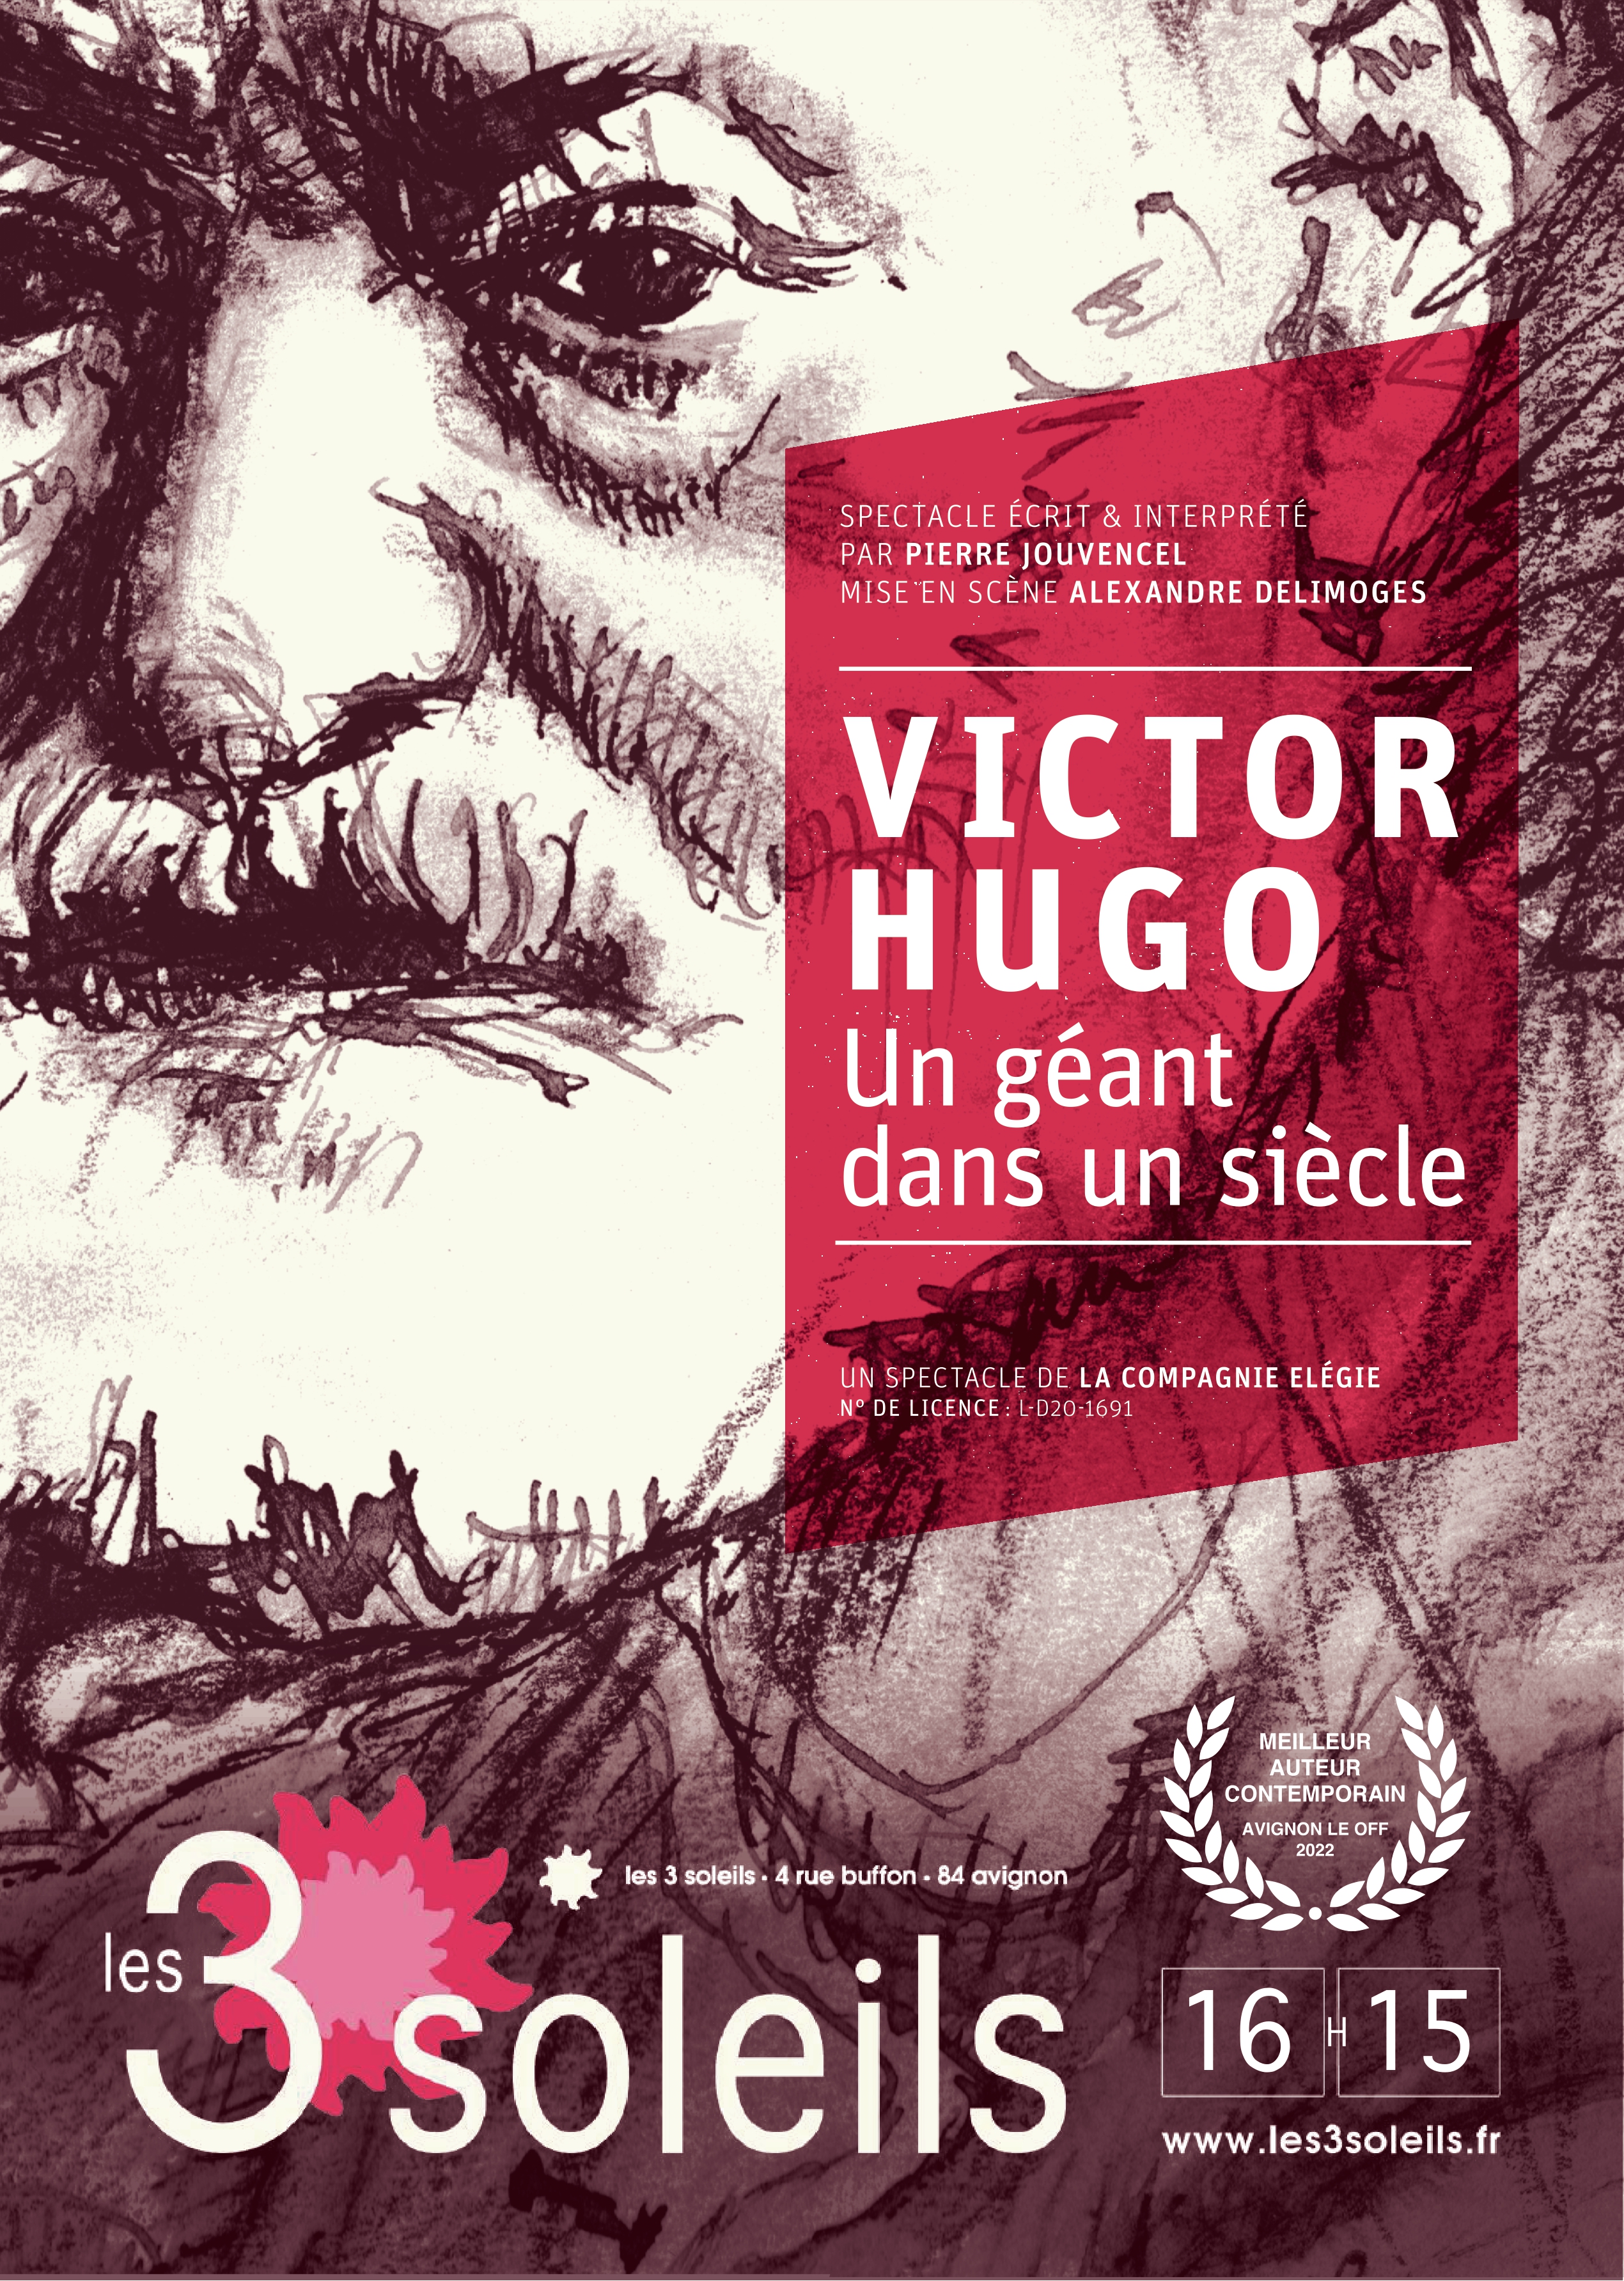 Détails du spectacle Victor Hugo Un géant dans un siècle